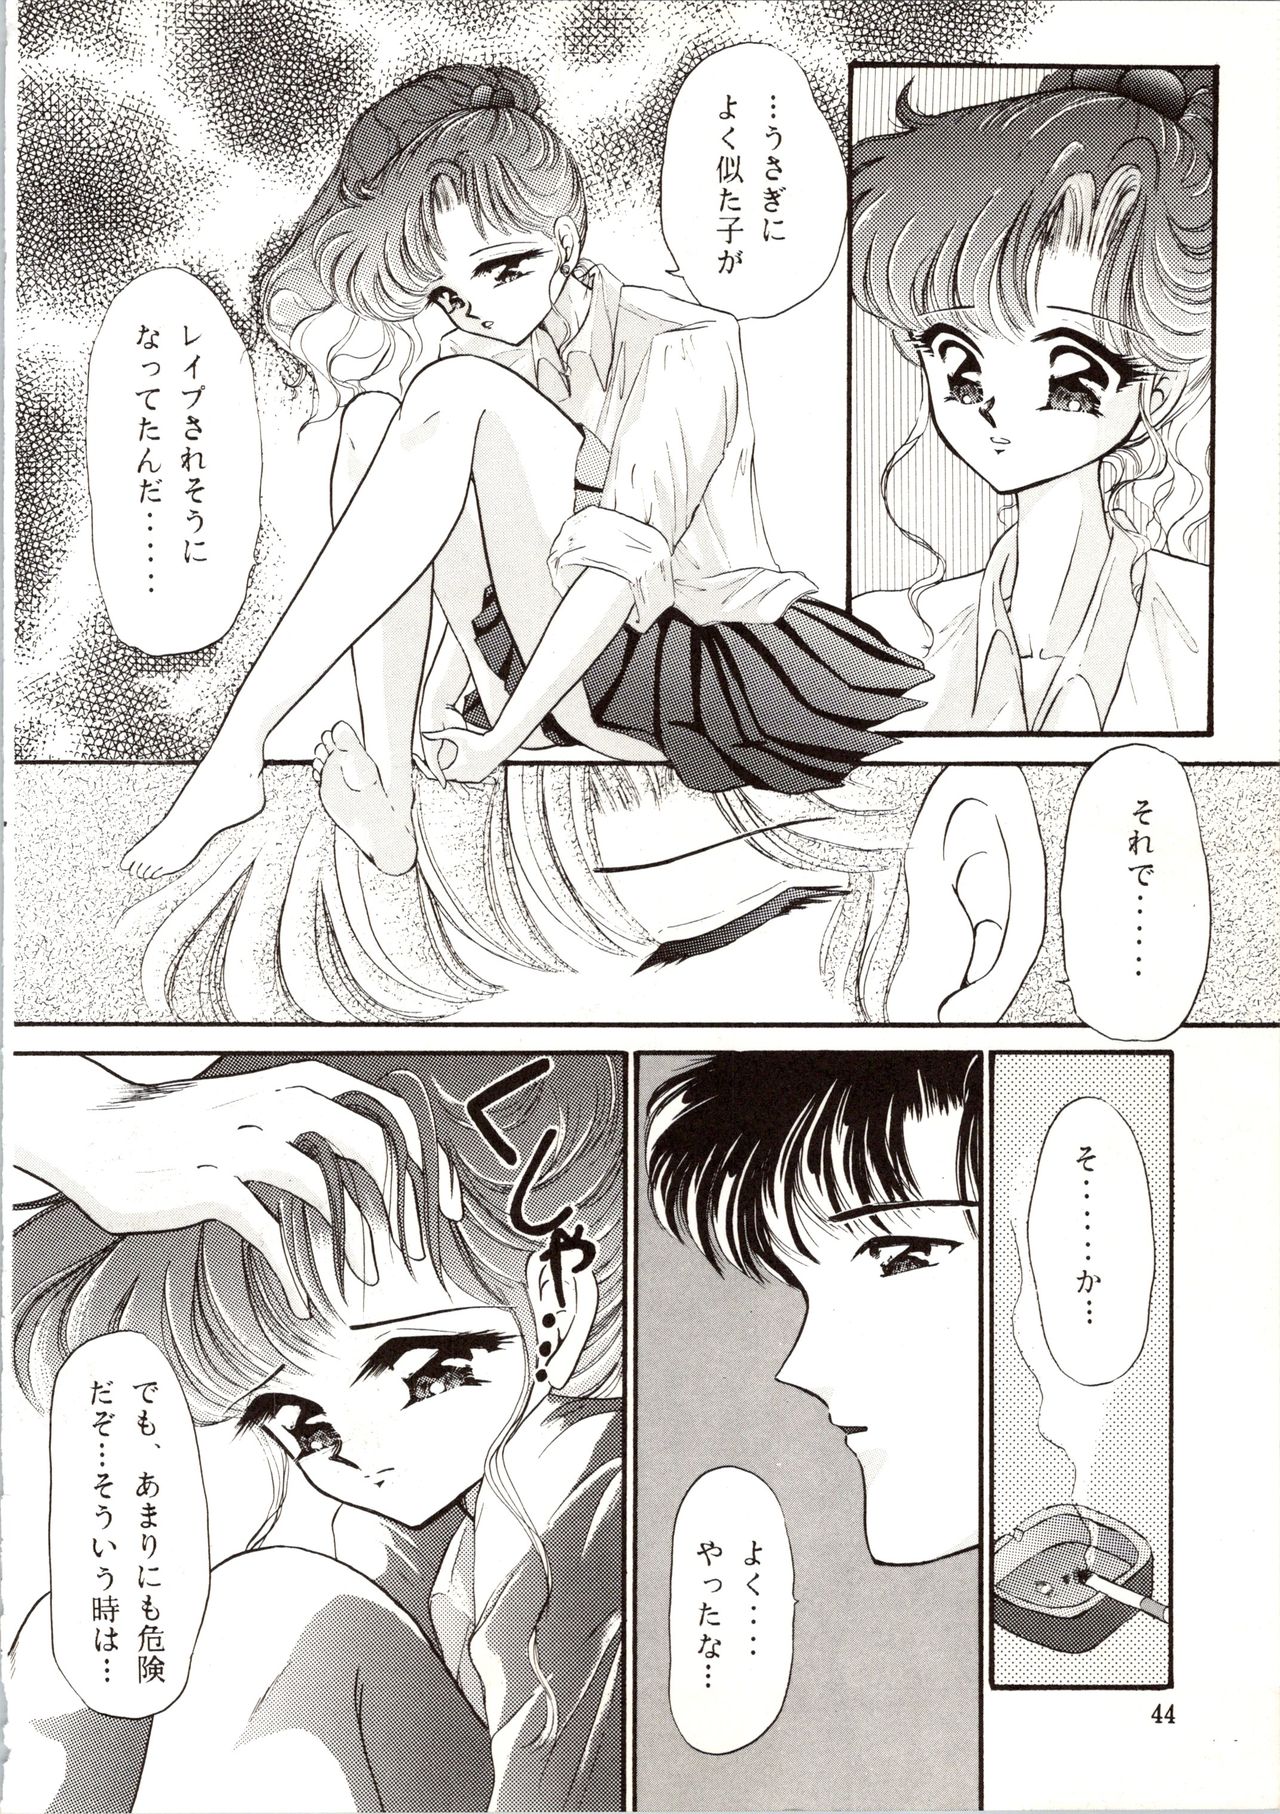 [P.P.P.P.C, TRAP (Matsuzaka Reia, Urano Mami)] Kangethu Hien Vol. 6 (Bishoujo Senshi Sailor Moon) page 44 full